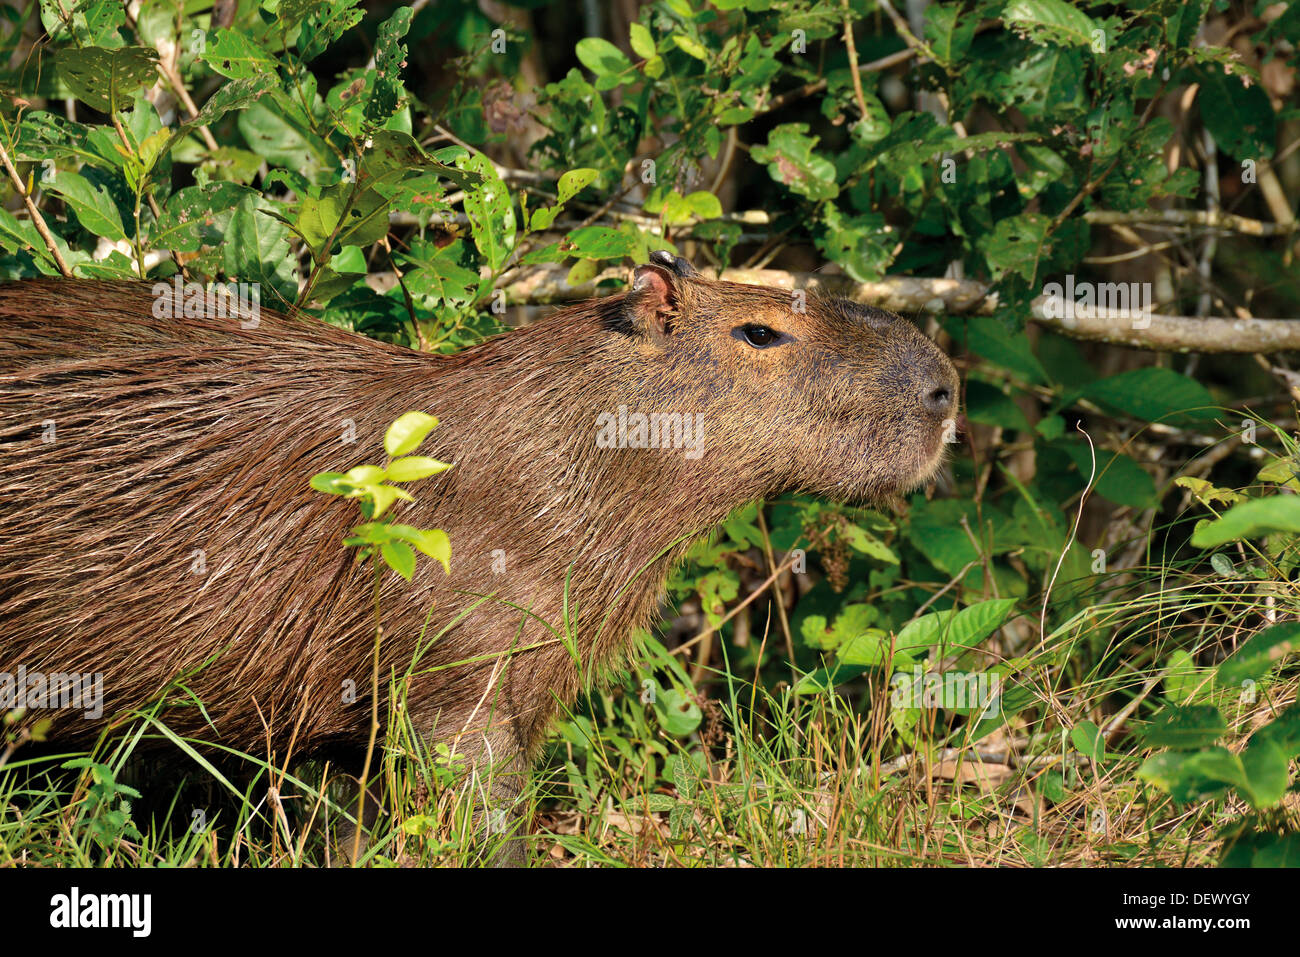 Brazil, Pantanal: Capybara (Hydrochoerus hydrochaeris) coming out of a bush at riverside Stock Photo